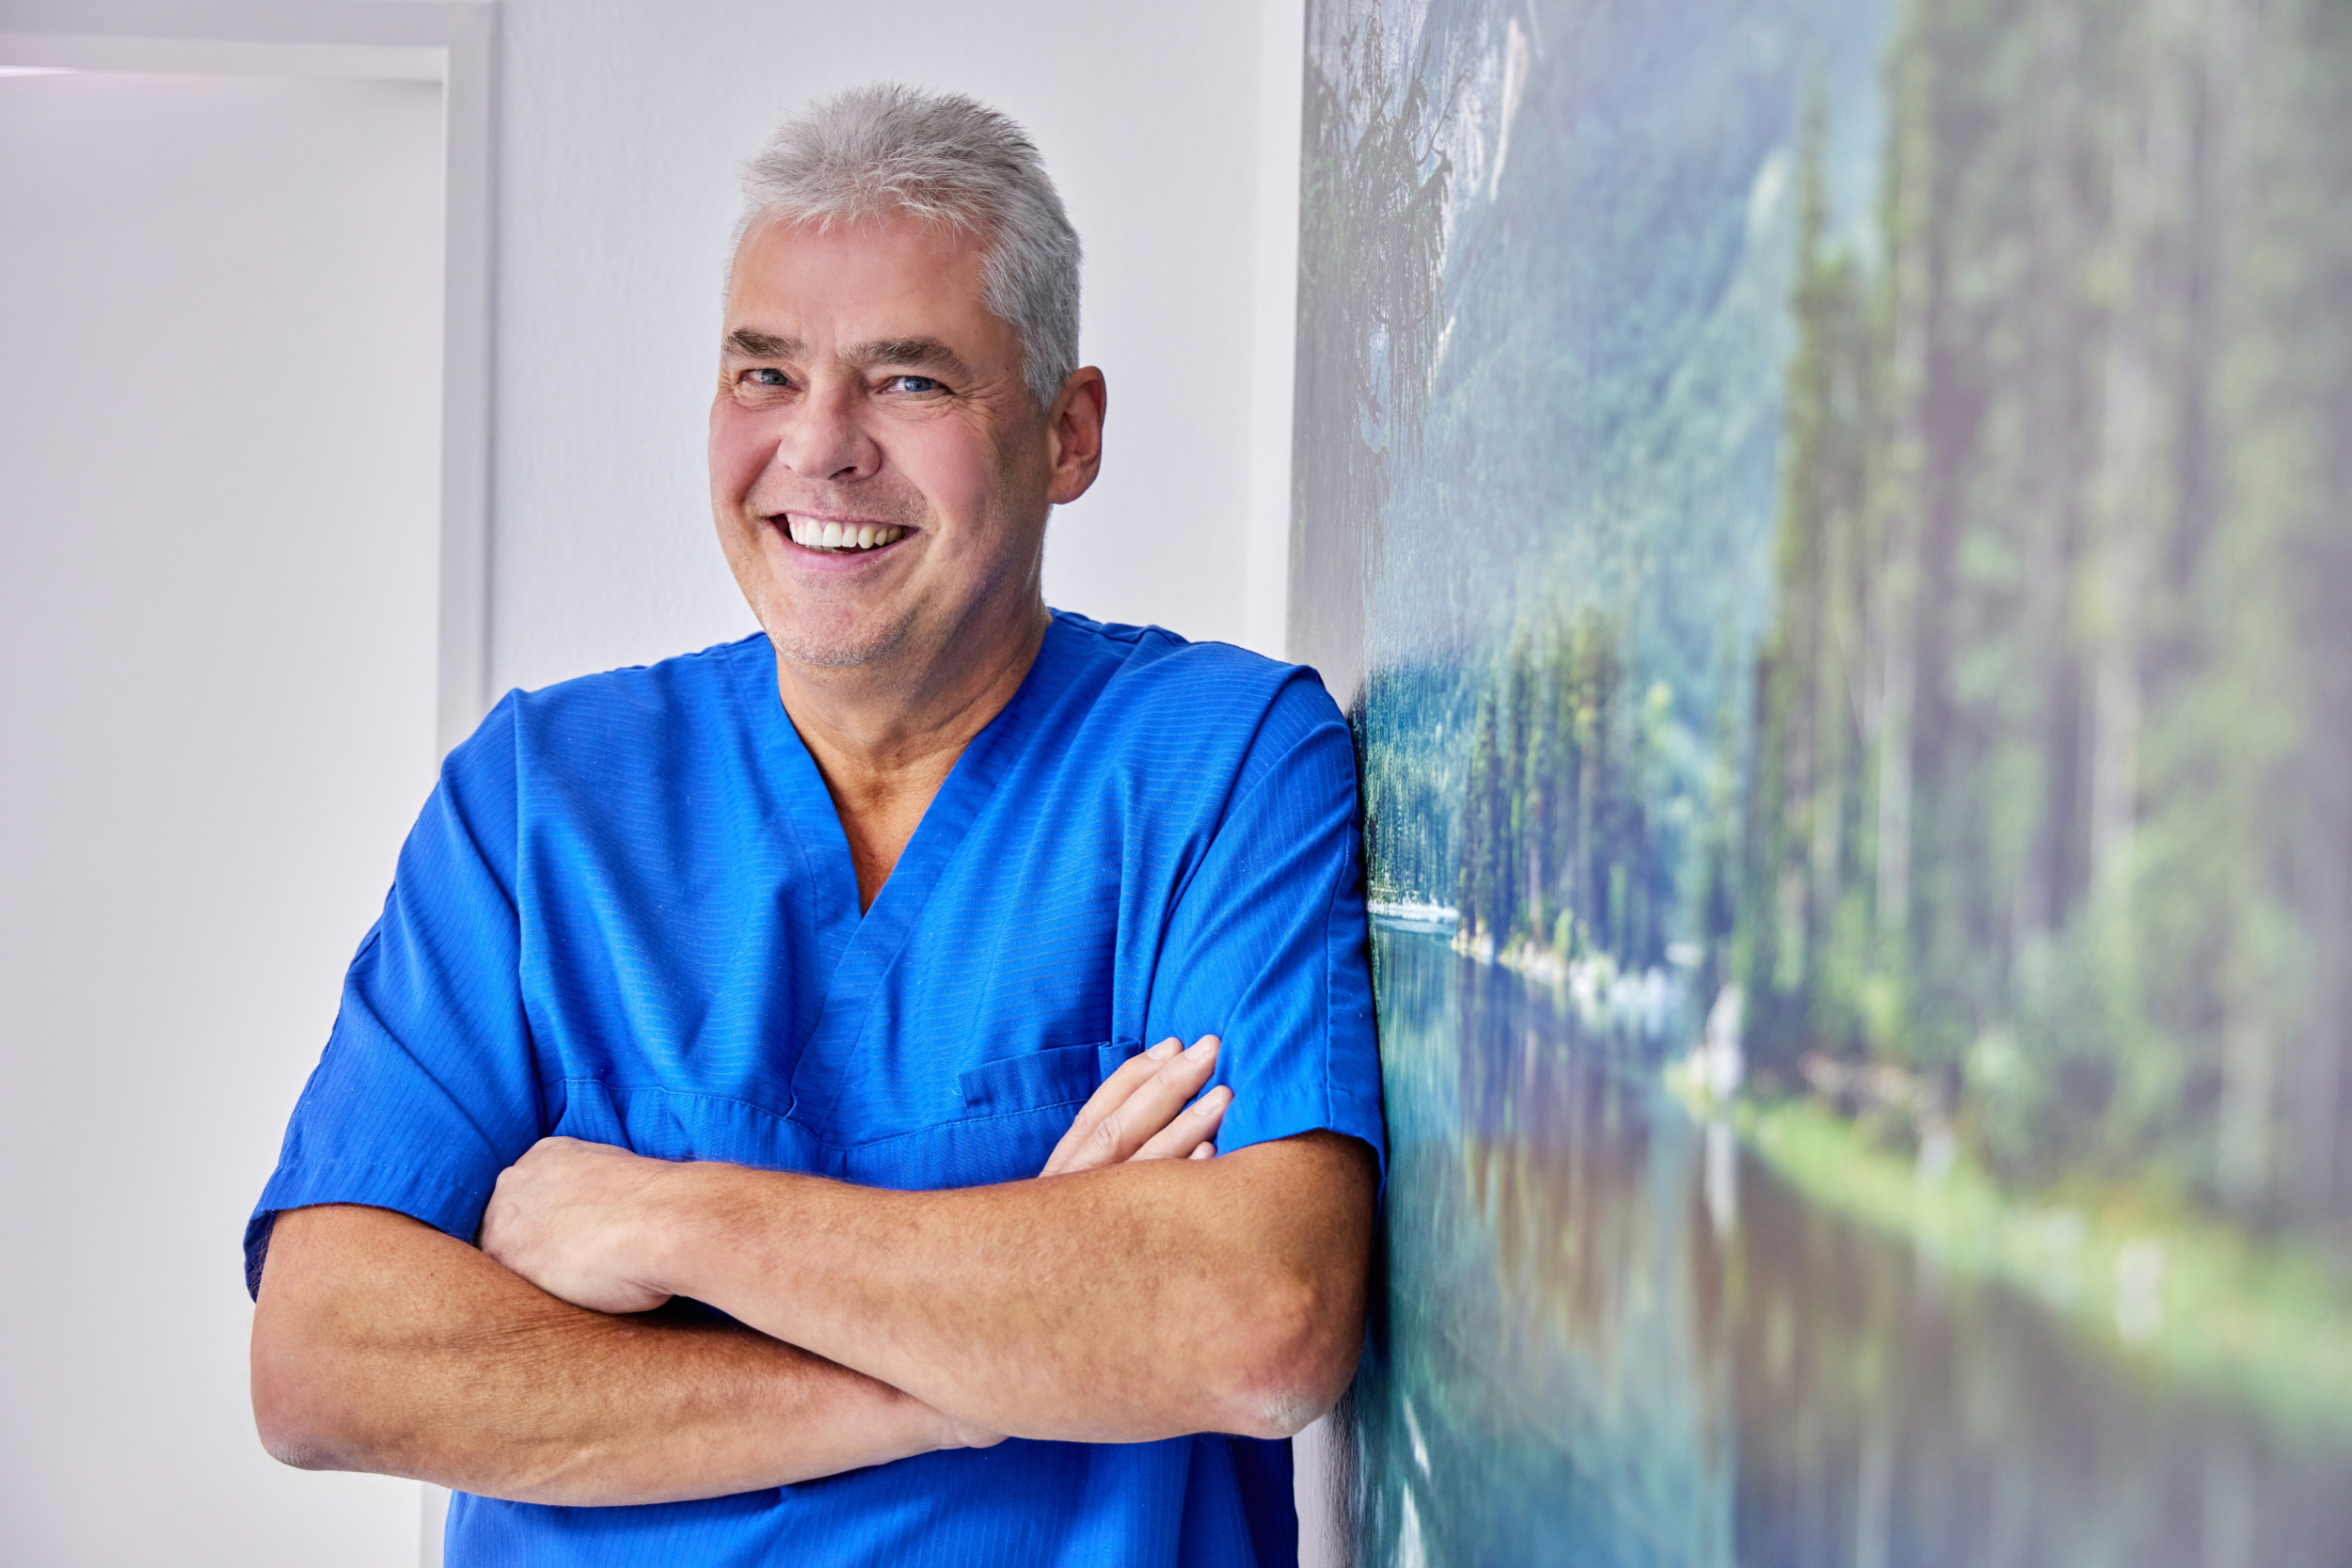 Dr. Becker im Behandlungsraum der Zahnarztpraxis in Grainau